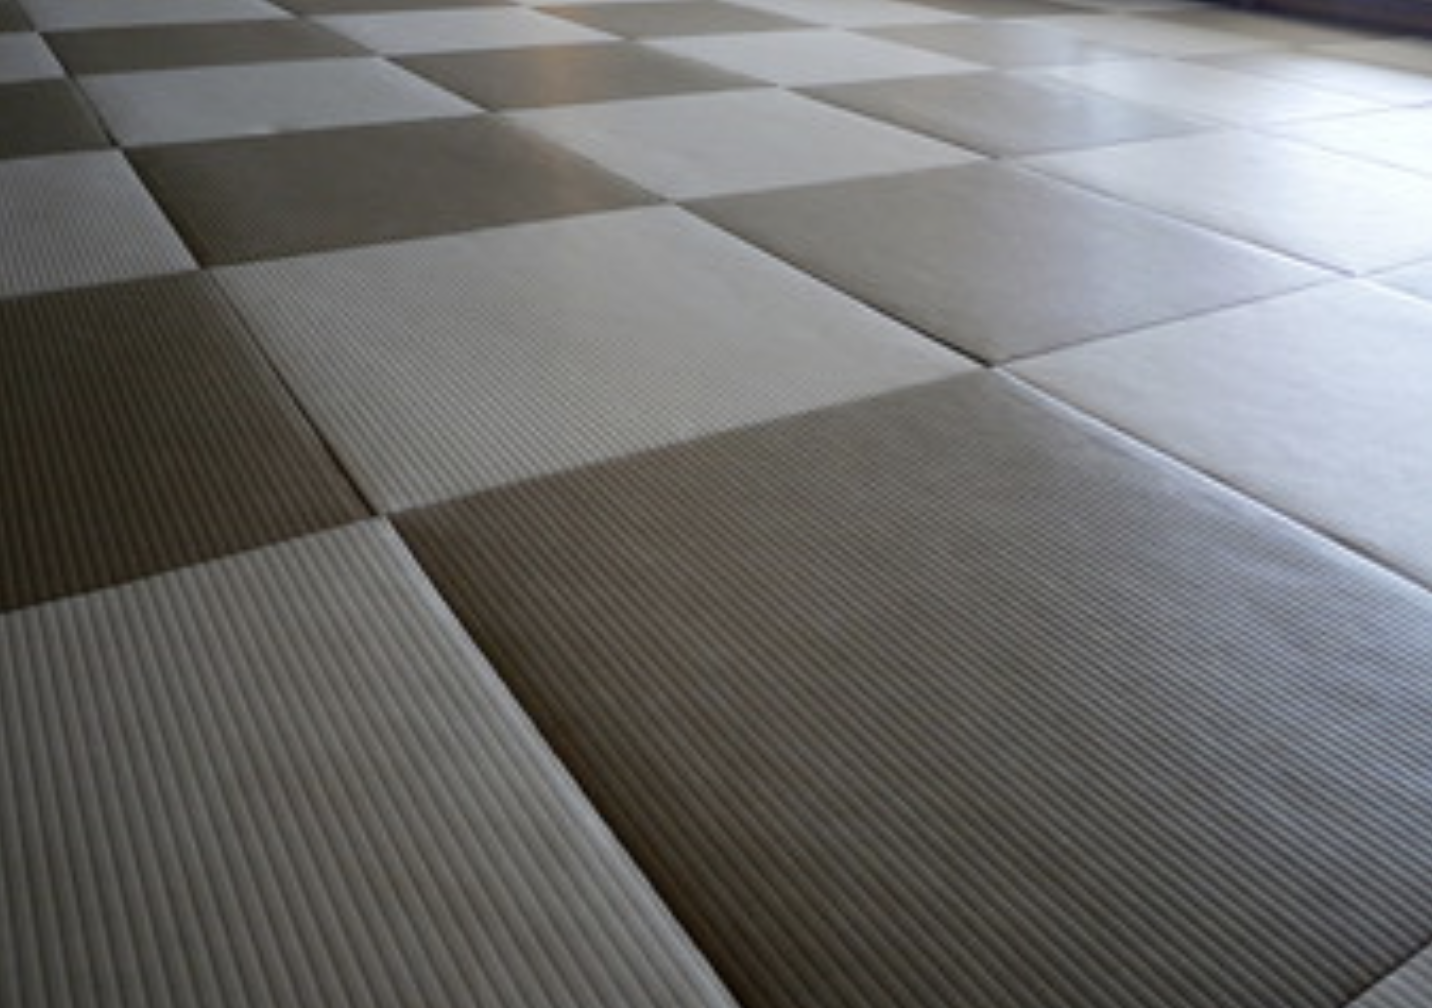 モダンでおしゃれな和室を造るには 琉球畳 がおすすめ 株式会社オークヴィルホームズ